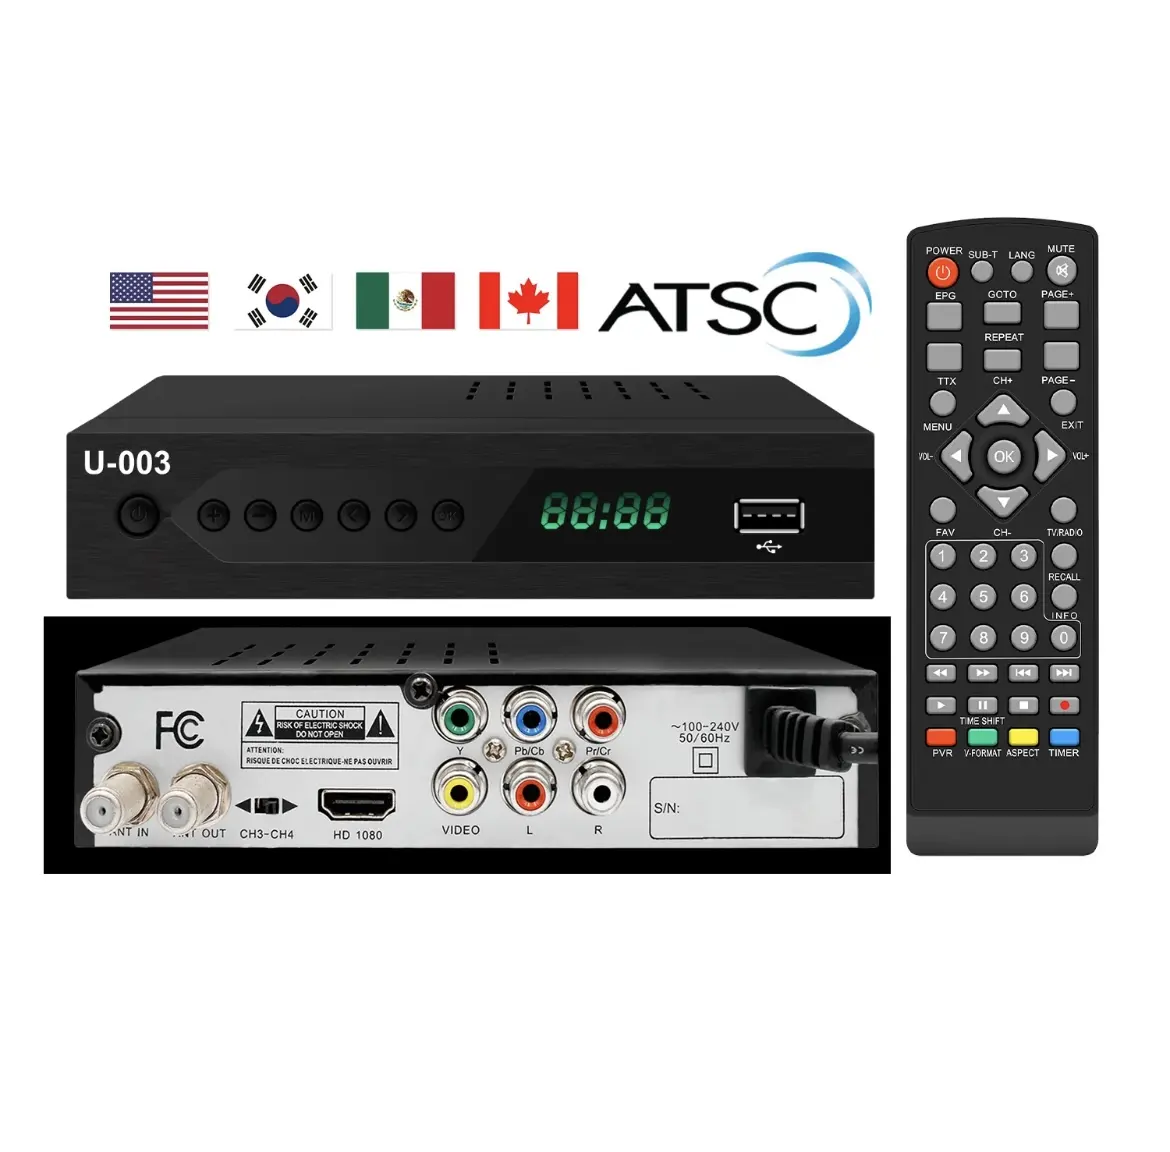 Scatola convertitore digitale ATSC all'ingrosso con sintonizzatore TV, USB Multimedia.ATSC set-top Box per gli Stati Uniti. Personalizzazione gratuita